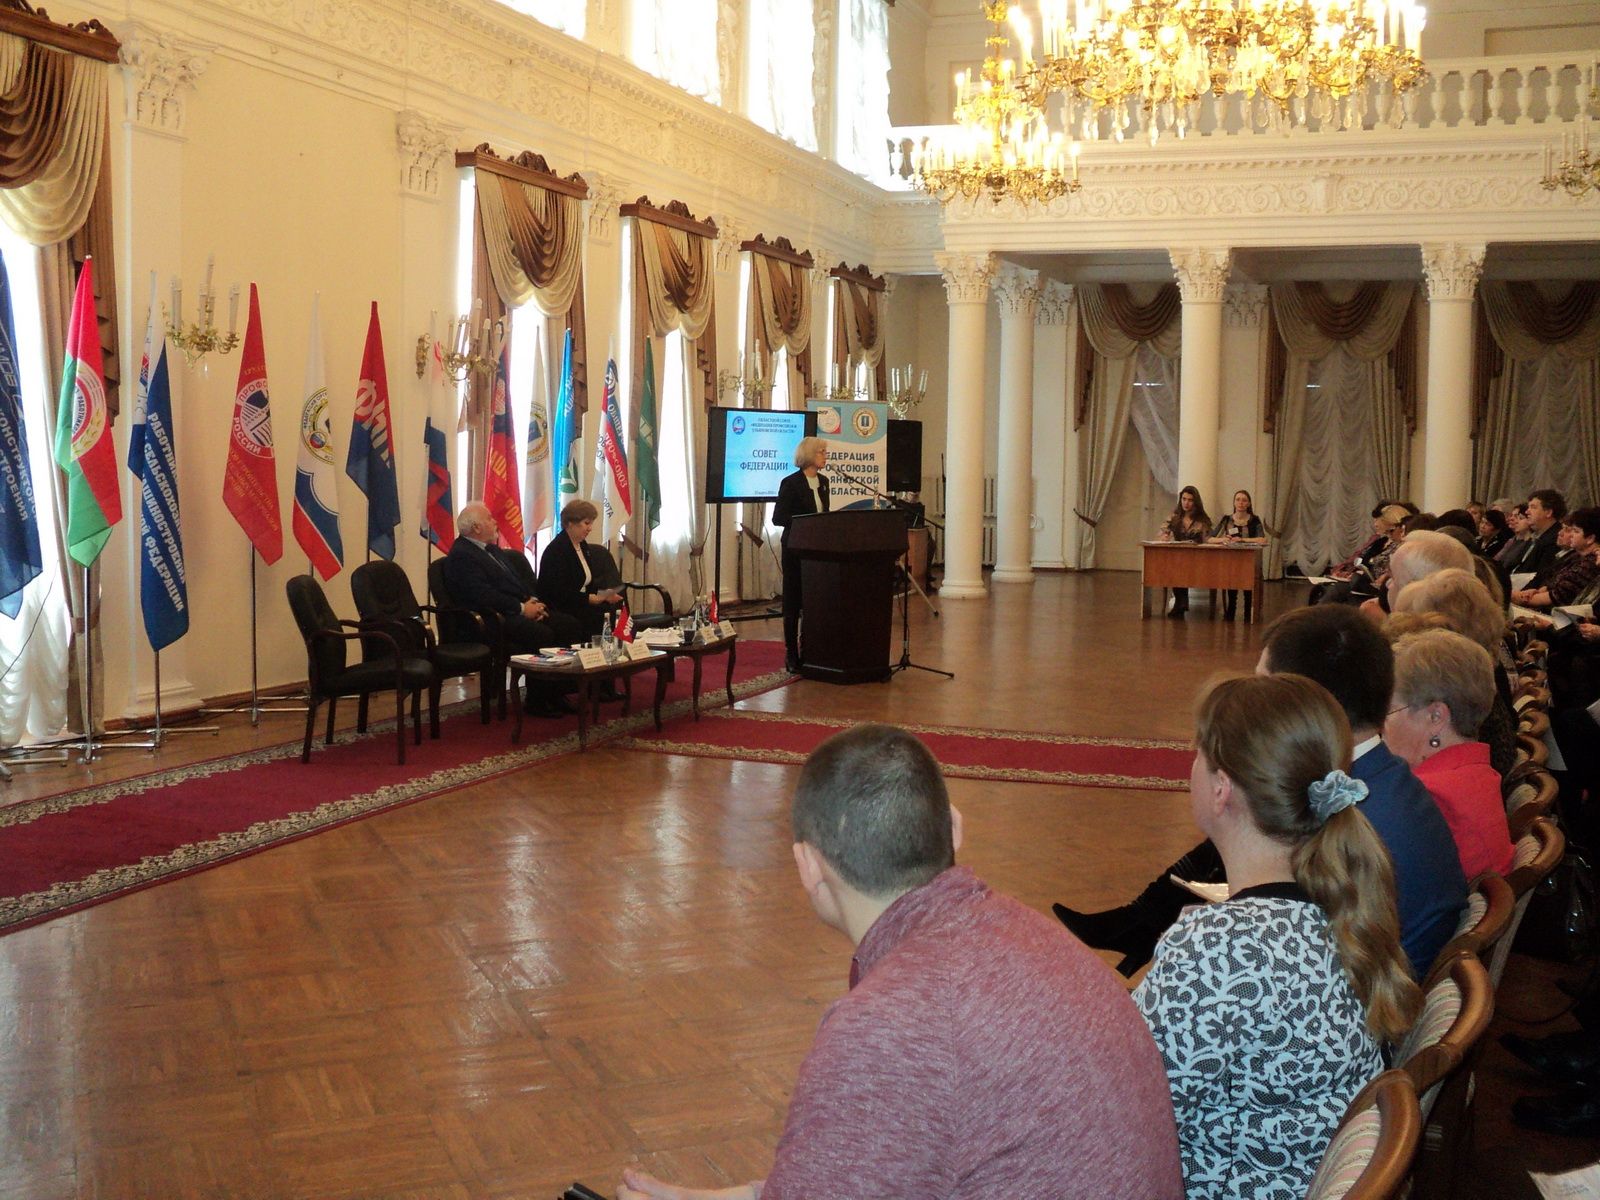 подписано Соглашение о взаимодействии и сотрудничестве между Уполномоченным по правам человека в Ульяновской области и Советом «Федерация профсоюзов Ульяновской области»